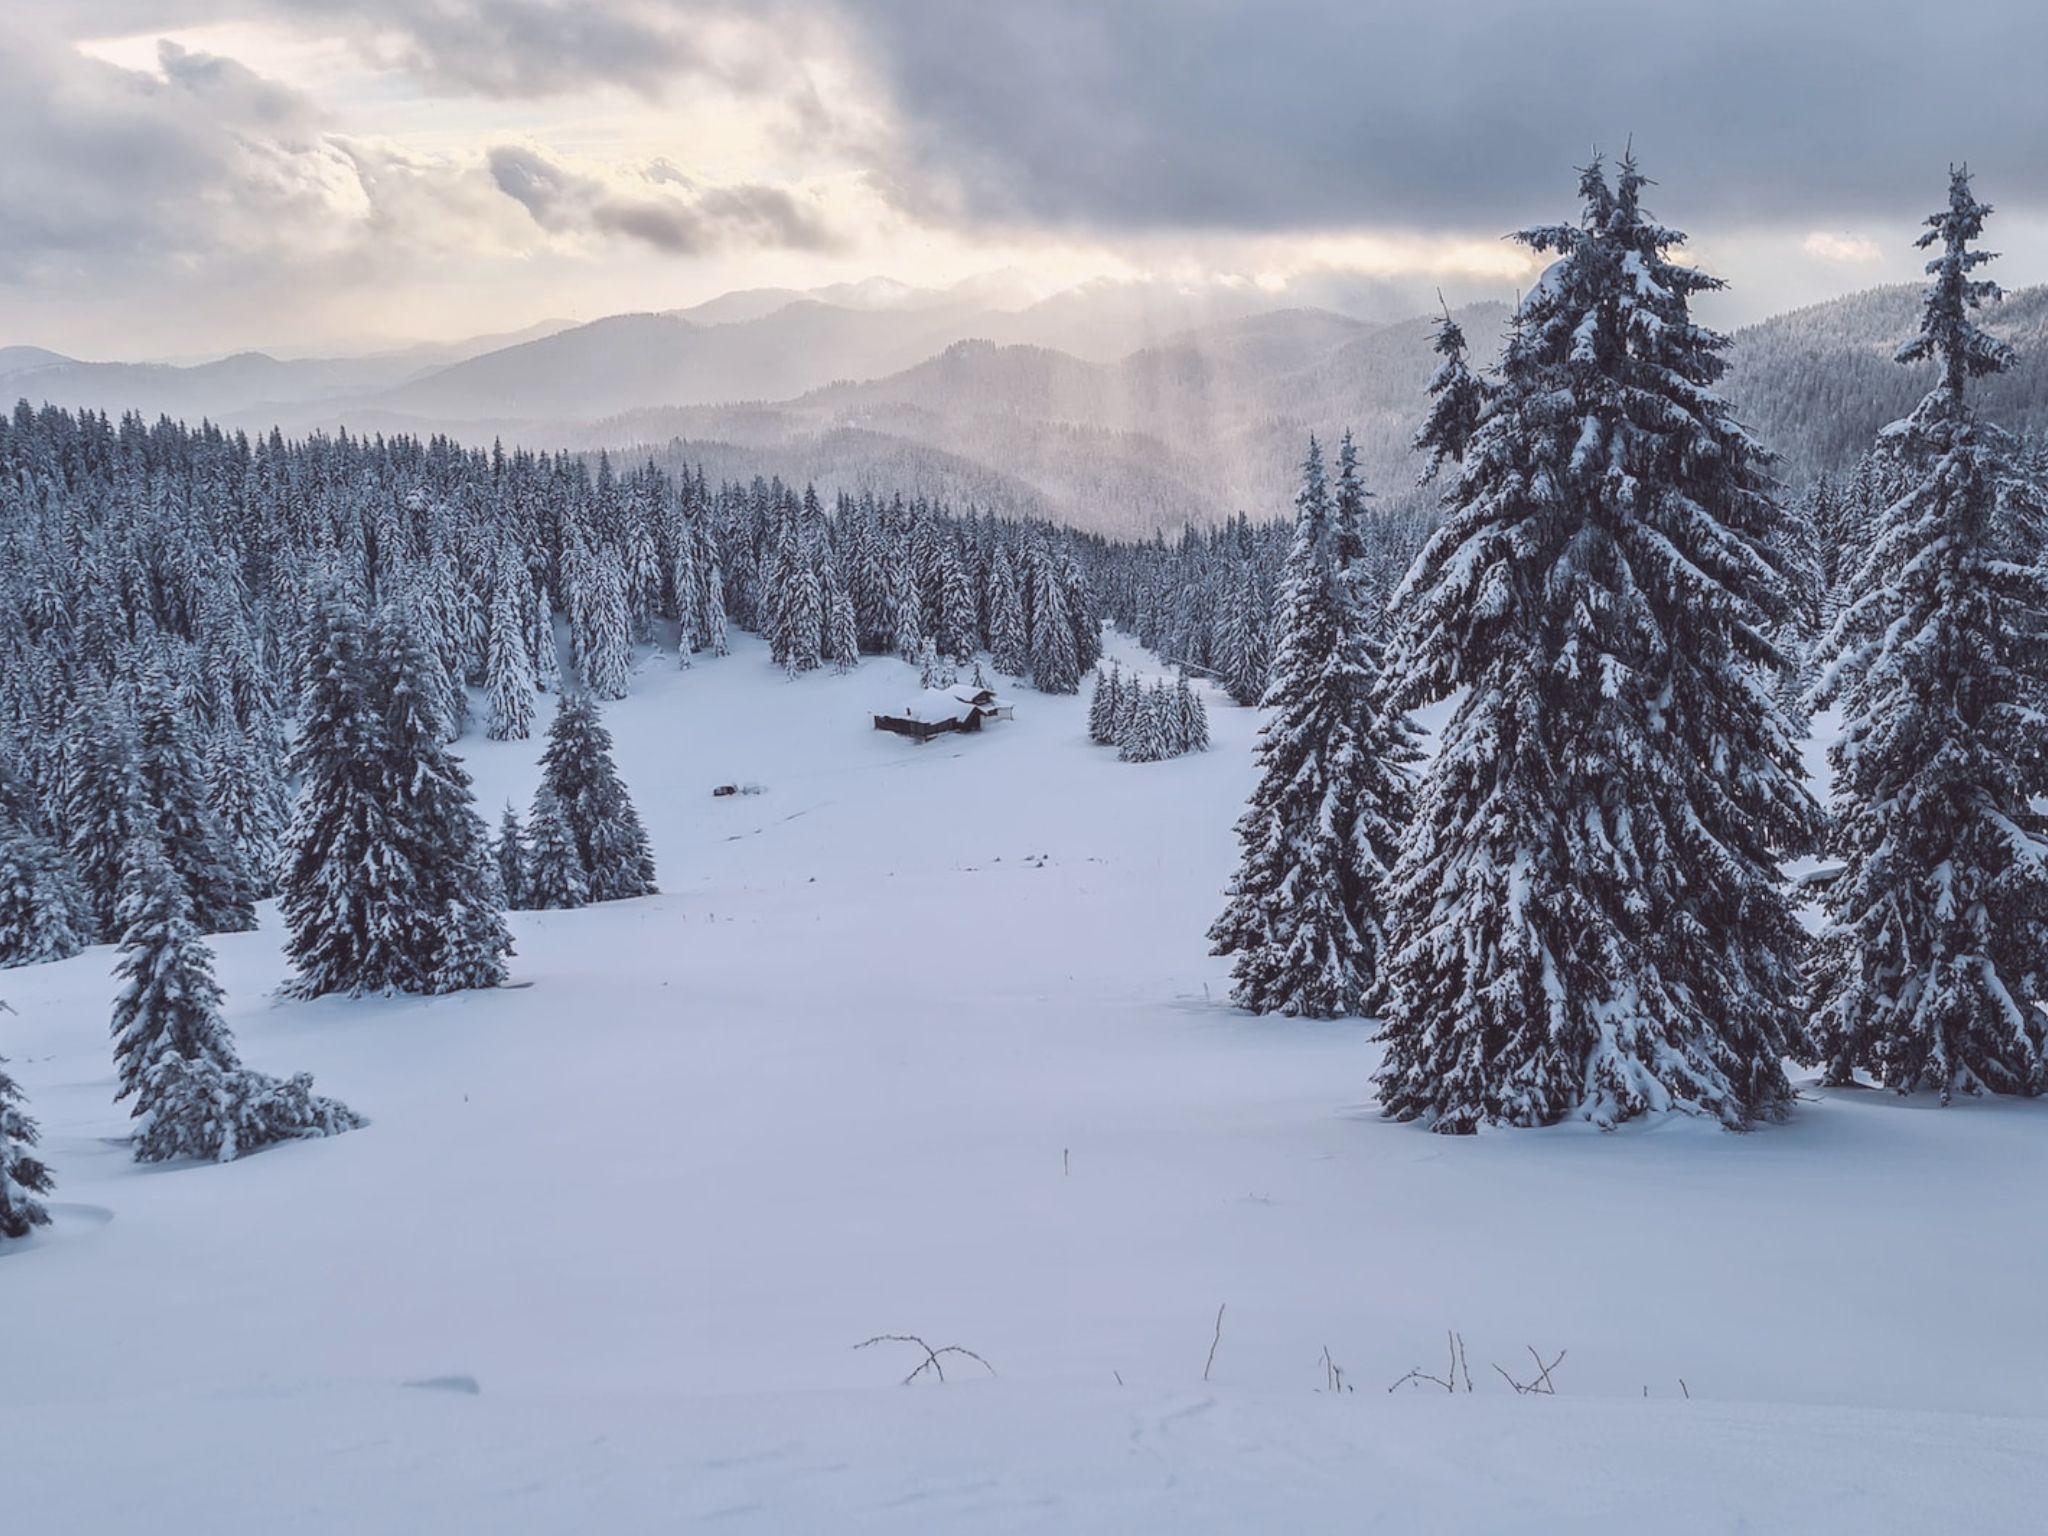 Affordable Winter Breaks: Bulgaria’s Top Ski Resorts